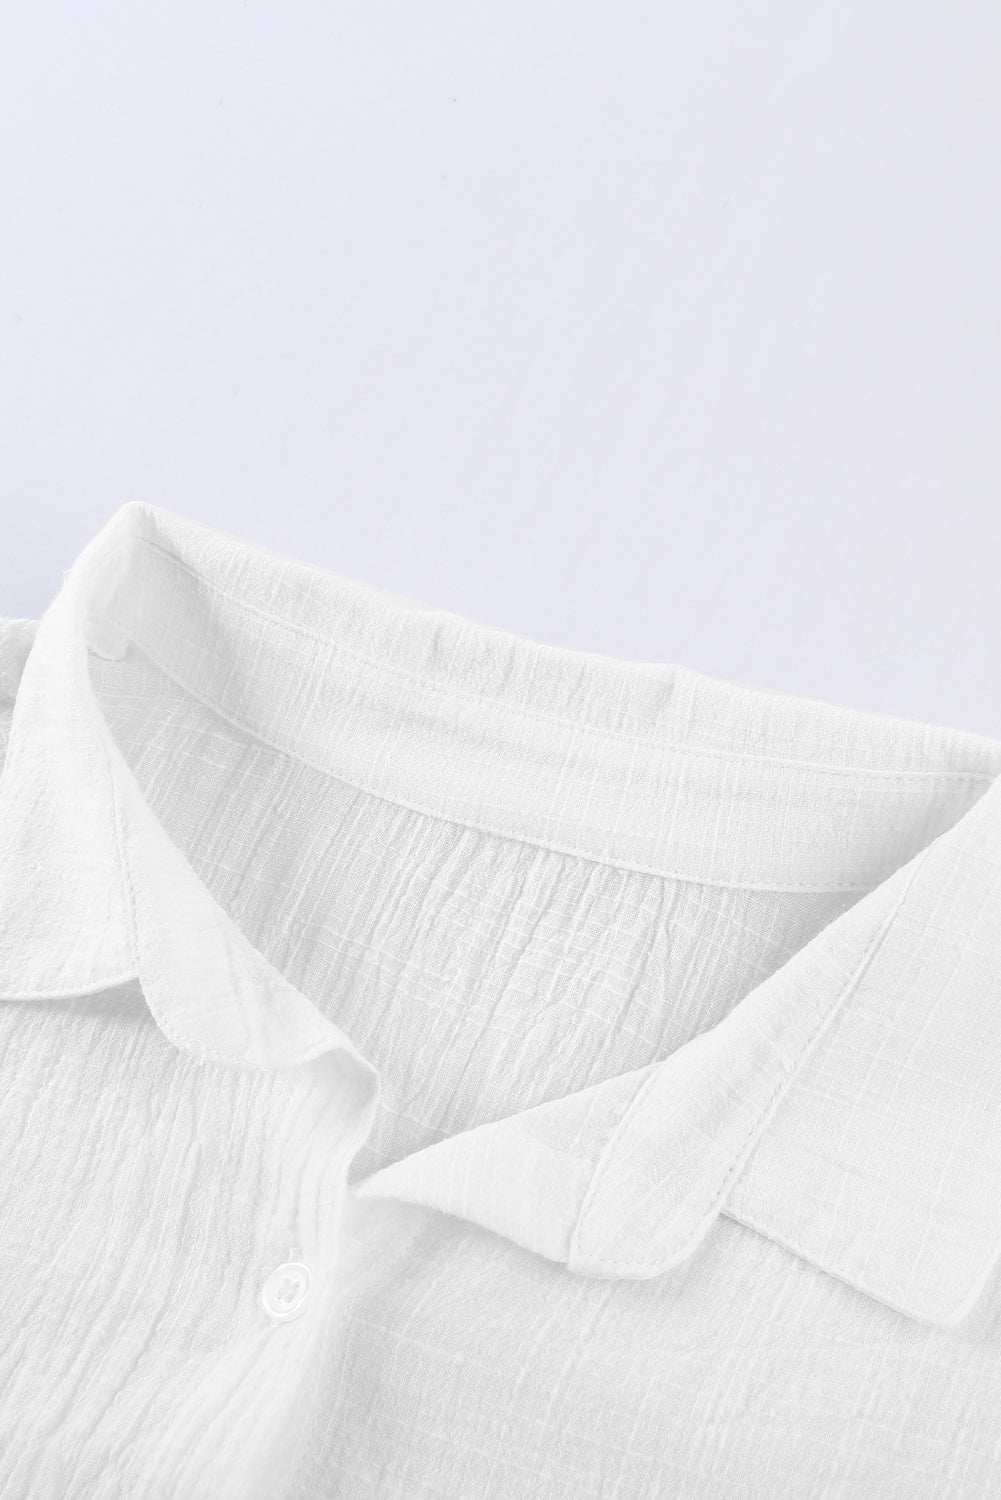 Jednobojna osnovna bijela košulja s teksturom